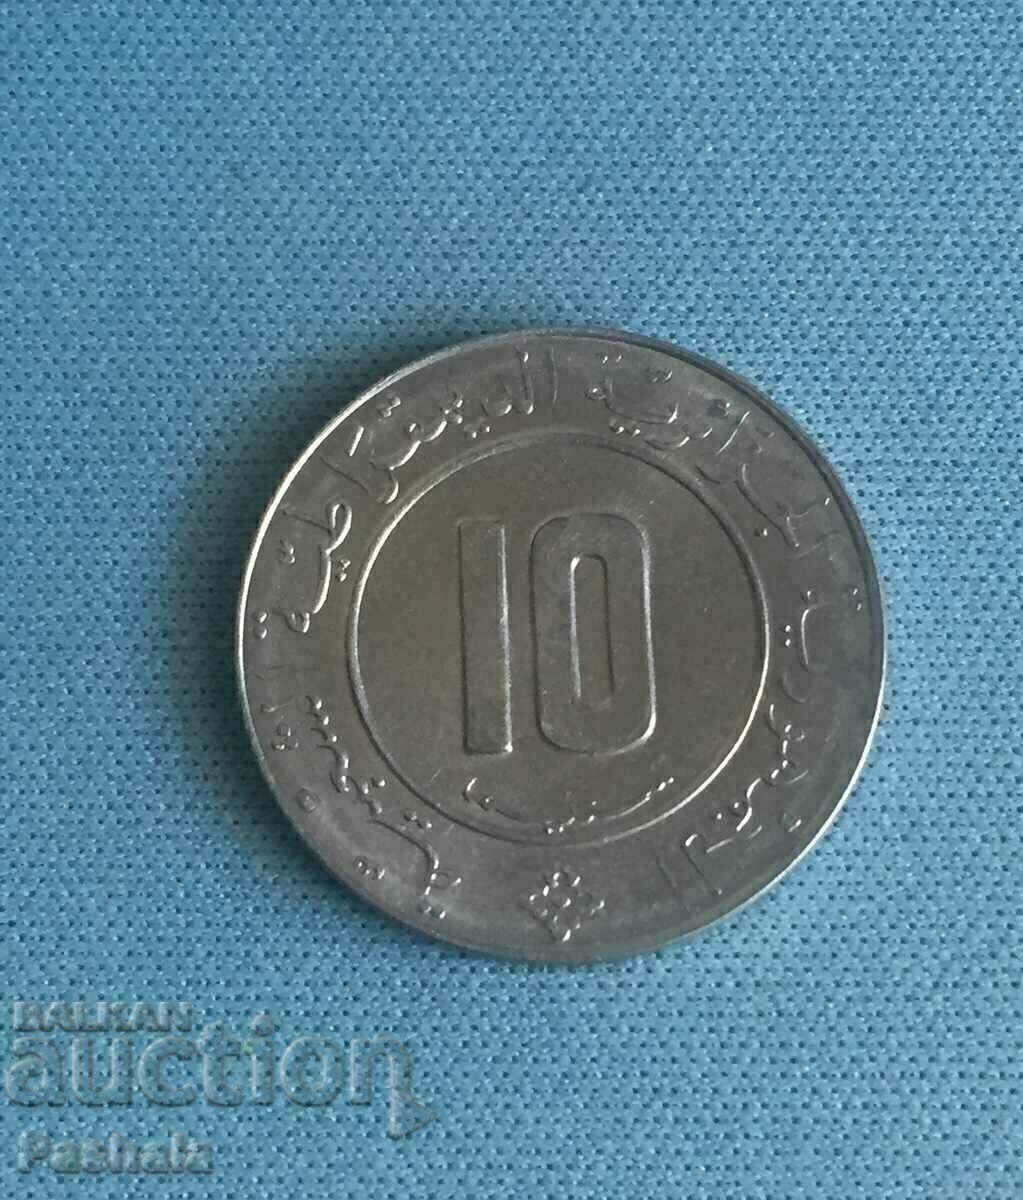 Algeria 10 centivas 1989